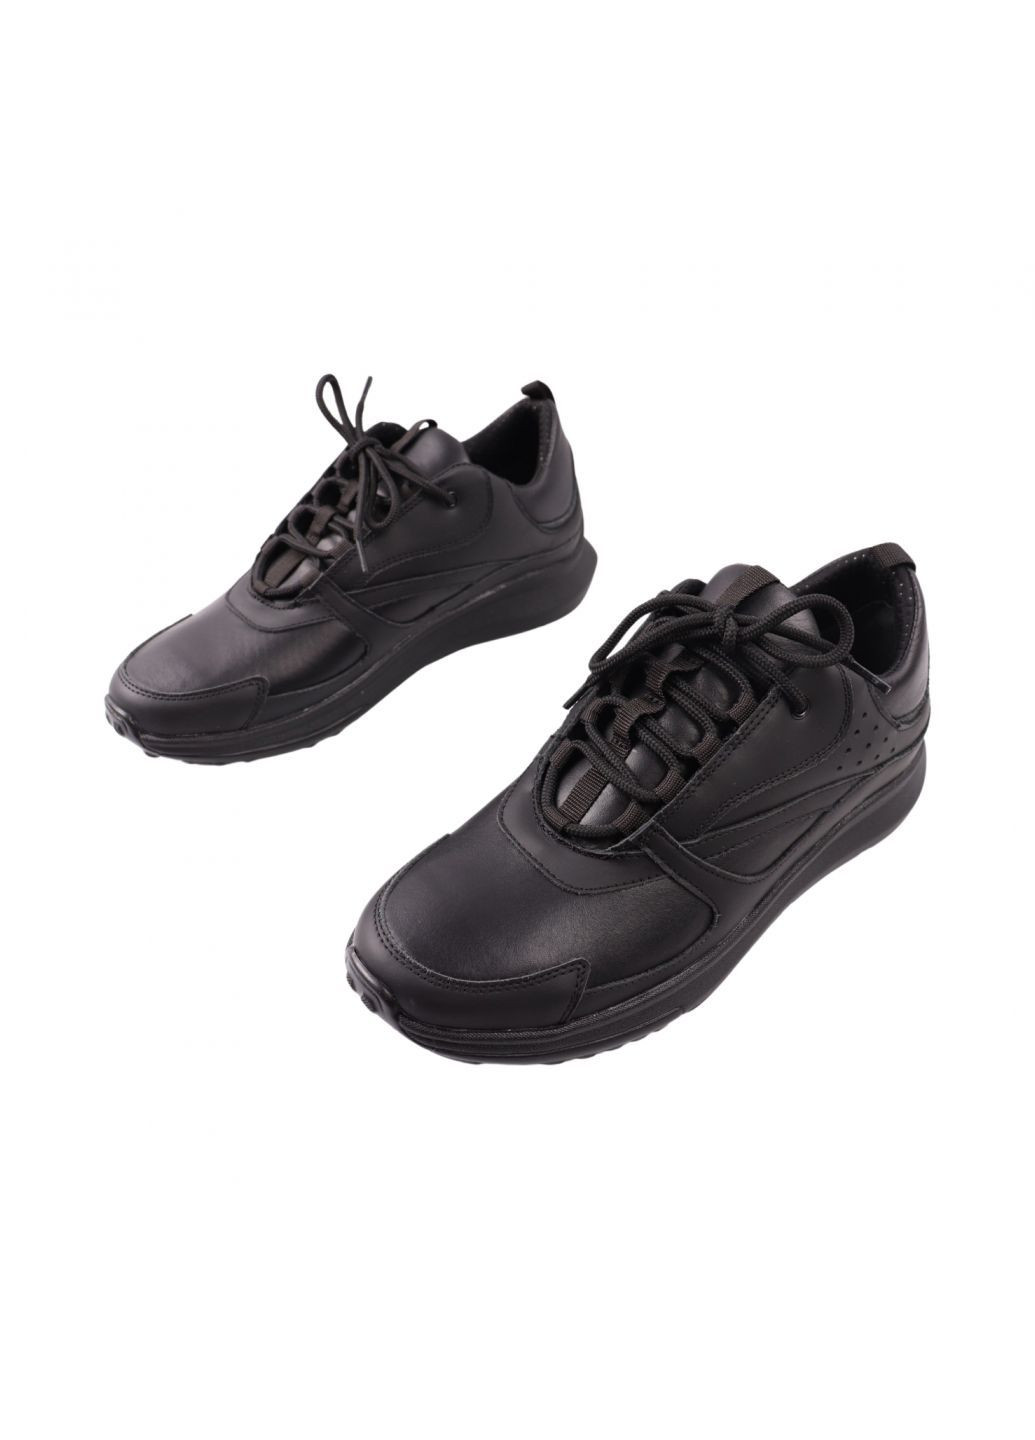 Черные кроссовки мужские черные натуральная кожа Vadrus 529-24DTS